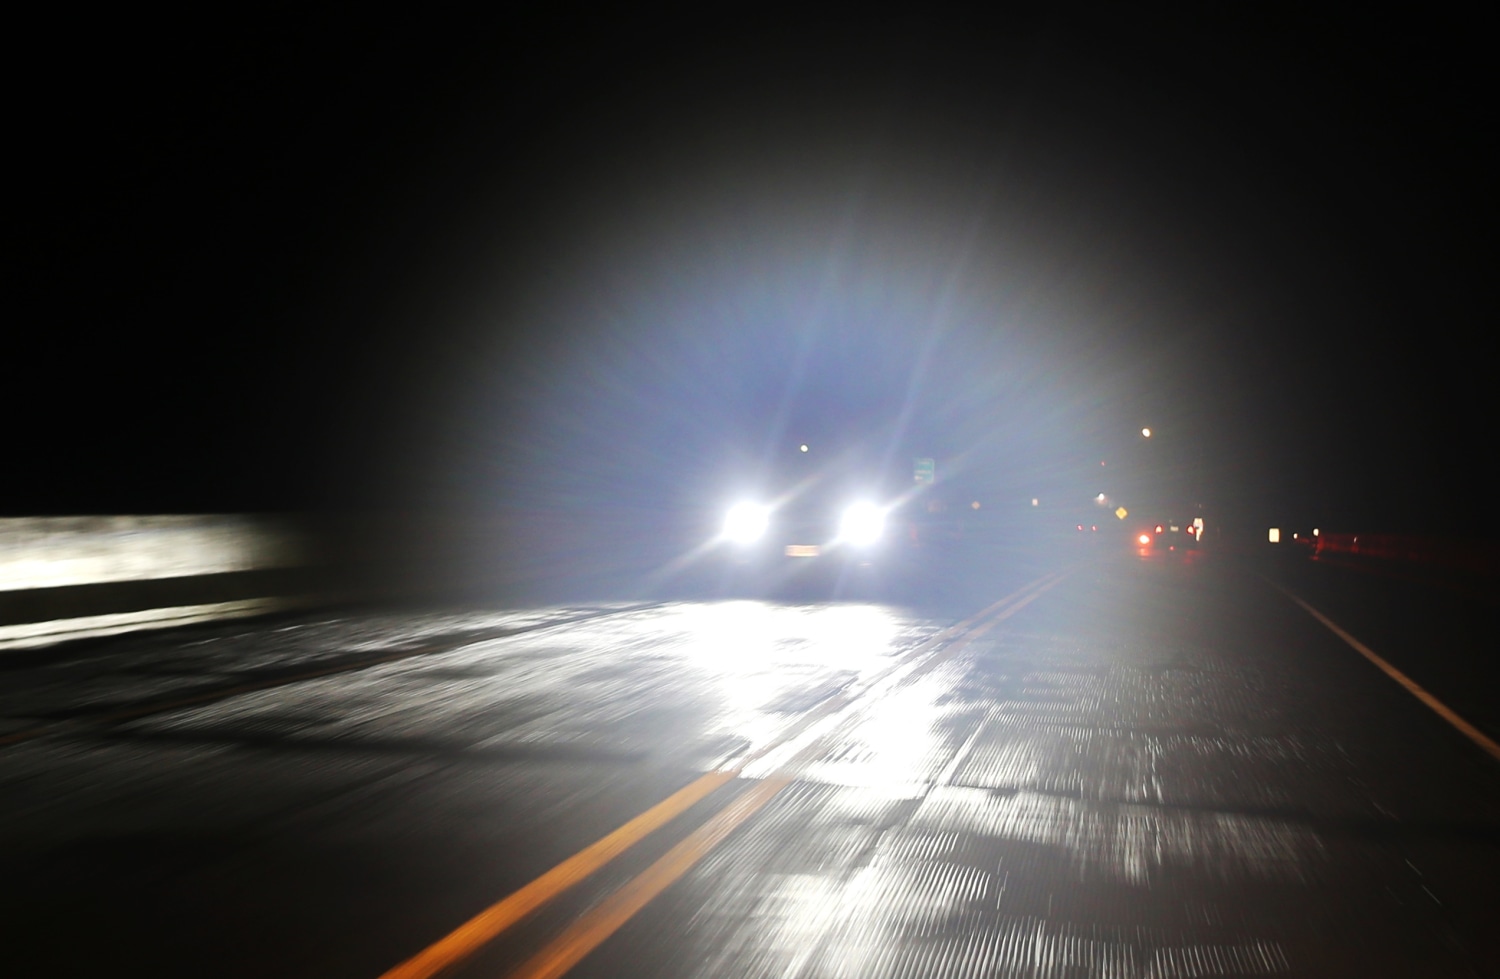 https://media-cldnry.s-nbcnews.com/image/upload/t_fit-1500w,f_auto,q_auto:best/rockcms/2023-05/230509-car-headlights-mjf-1610-30350e.jpg